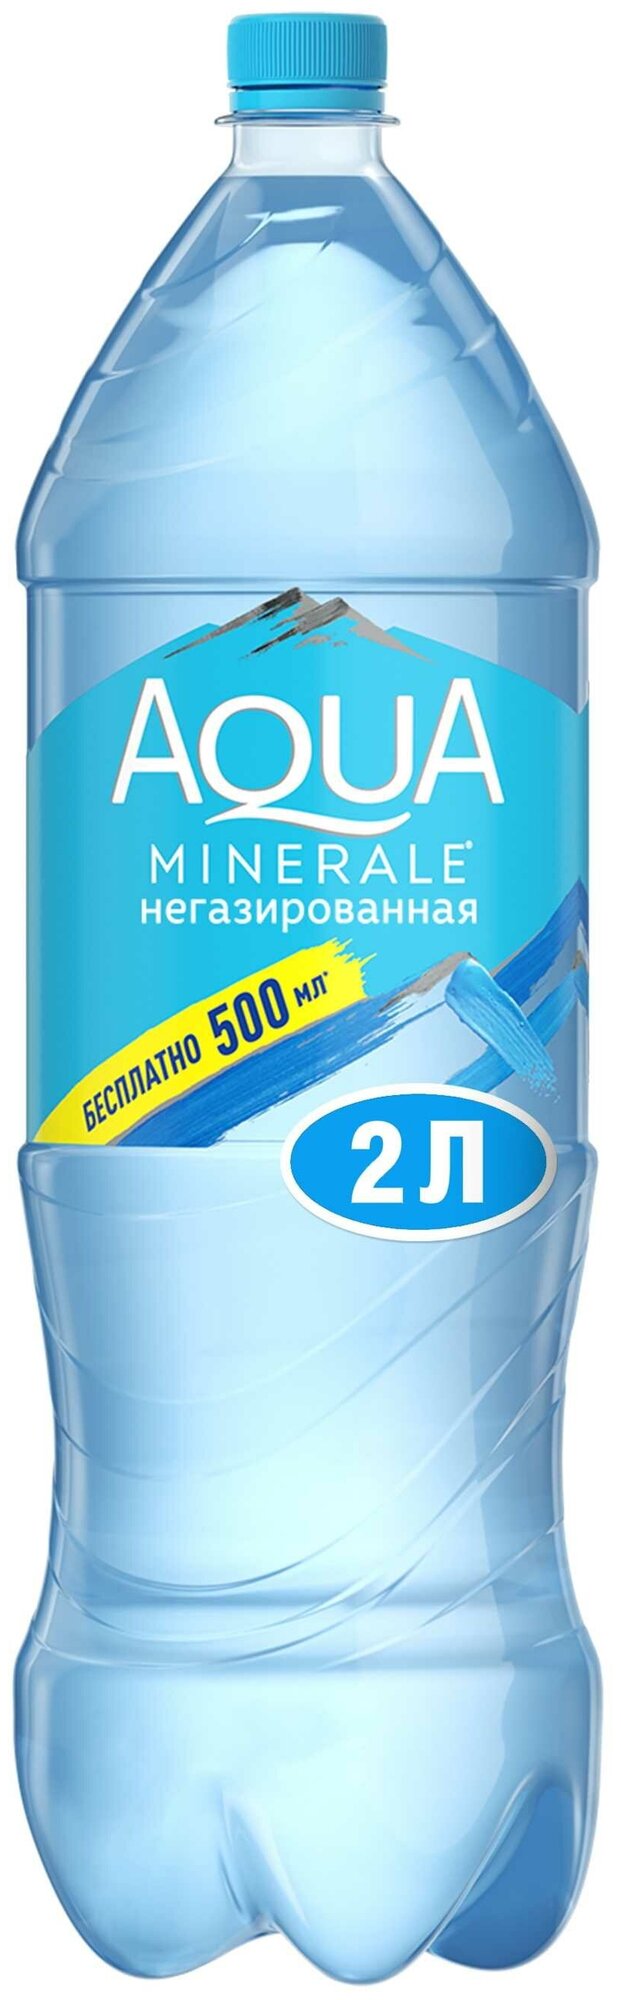 Вода Aqua Minerale Негазированная 2 л (товар продается поштучно)